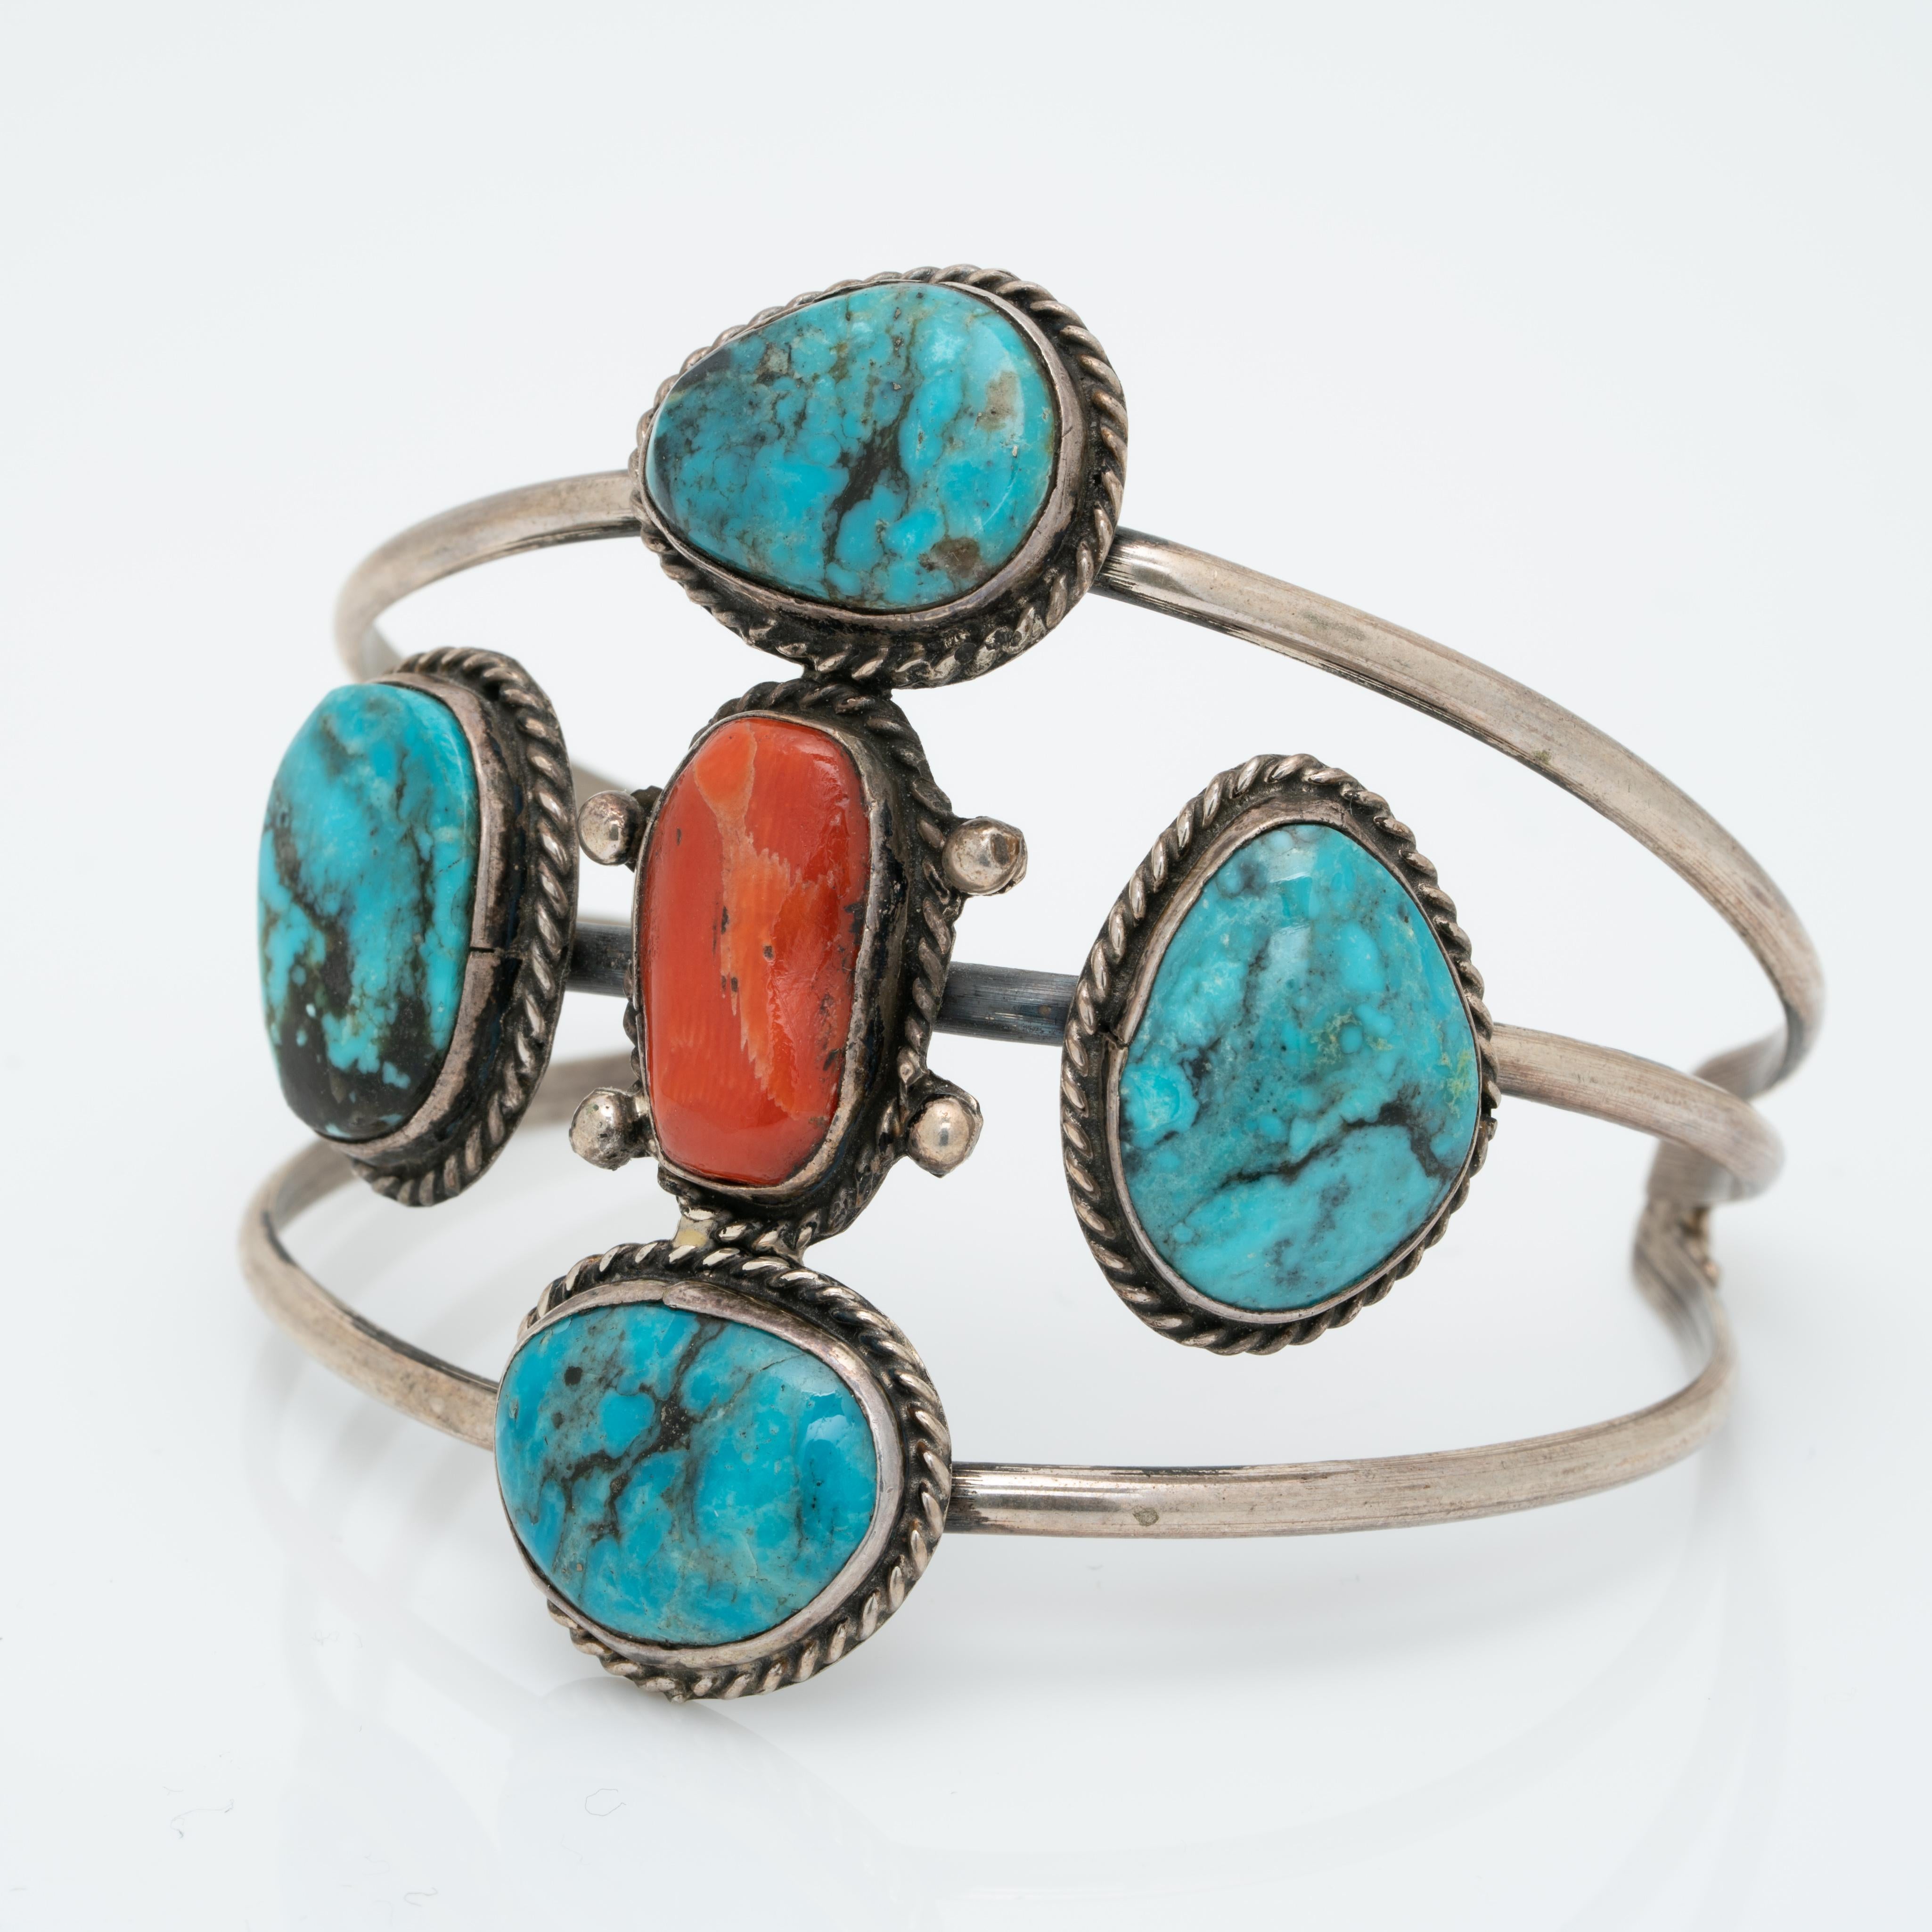 Vintage Native American Navajo Sterling Silver and Turquoise and Coral Bracelet Cuff c.1970s

Forgé à la main. Une merveilleuse manchette Navajo vintage !

La patine de l'argent est oxydée, nous ne nettoyons pas les pièces d'argent anciennes et